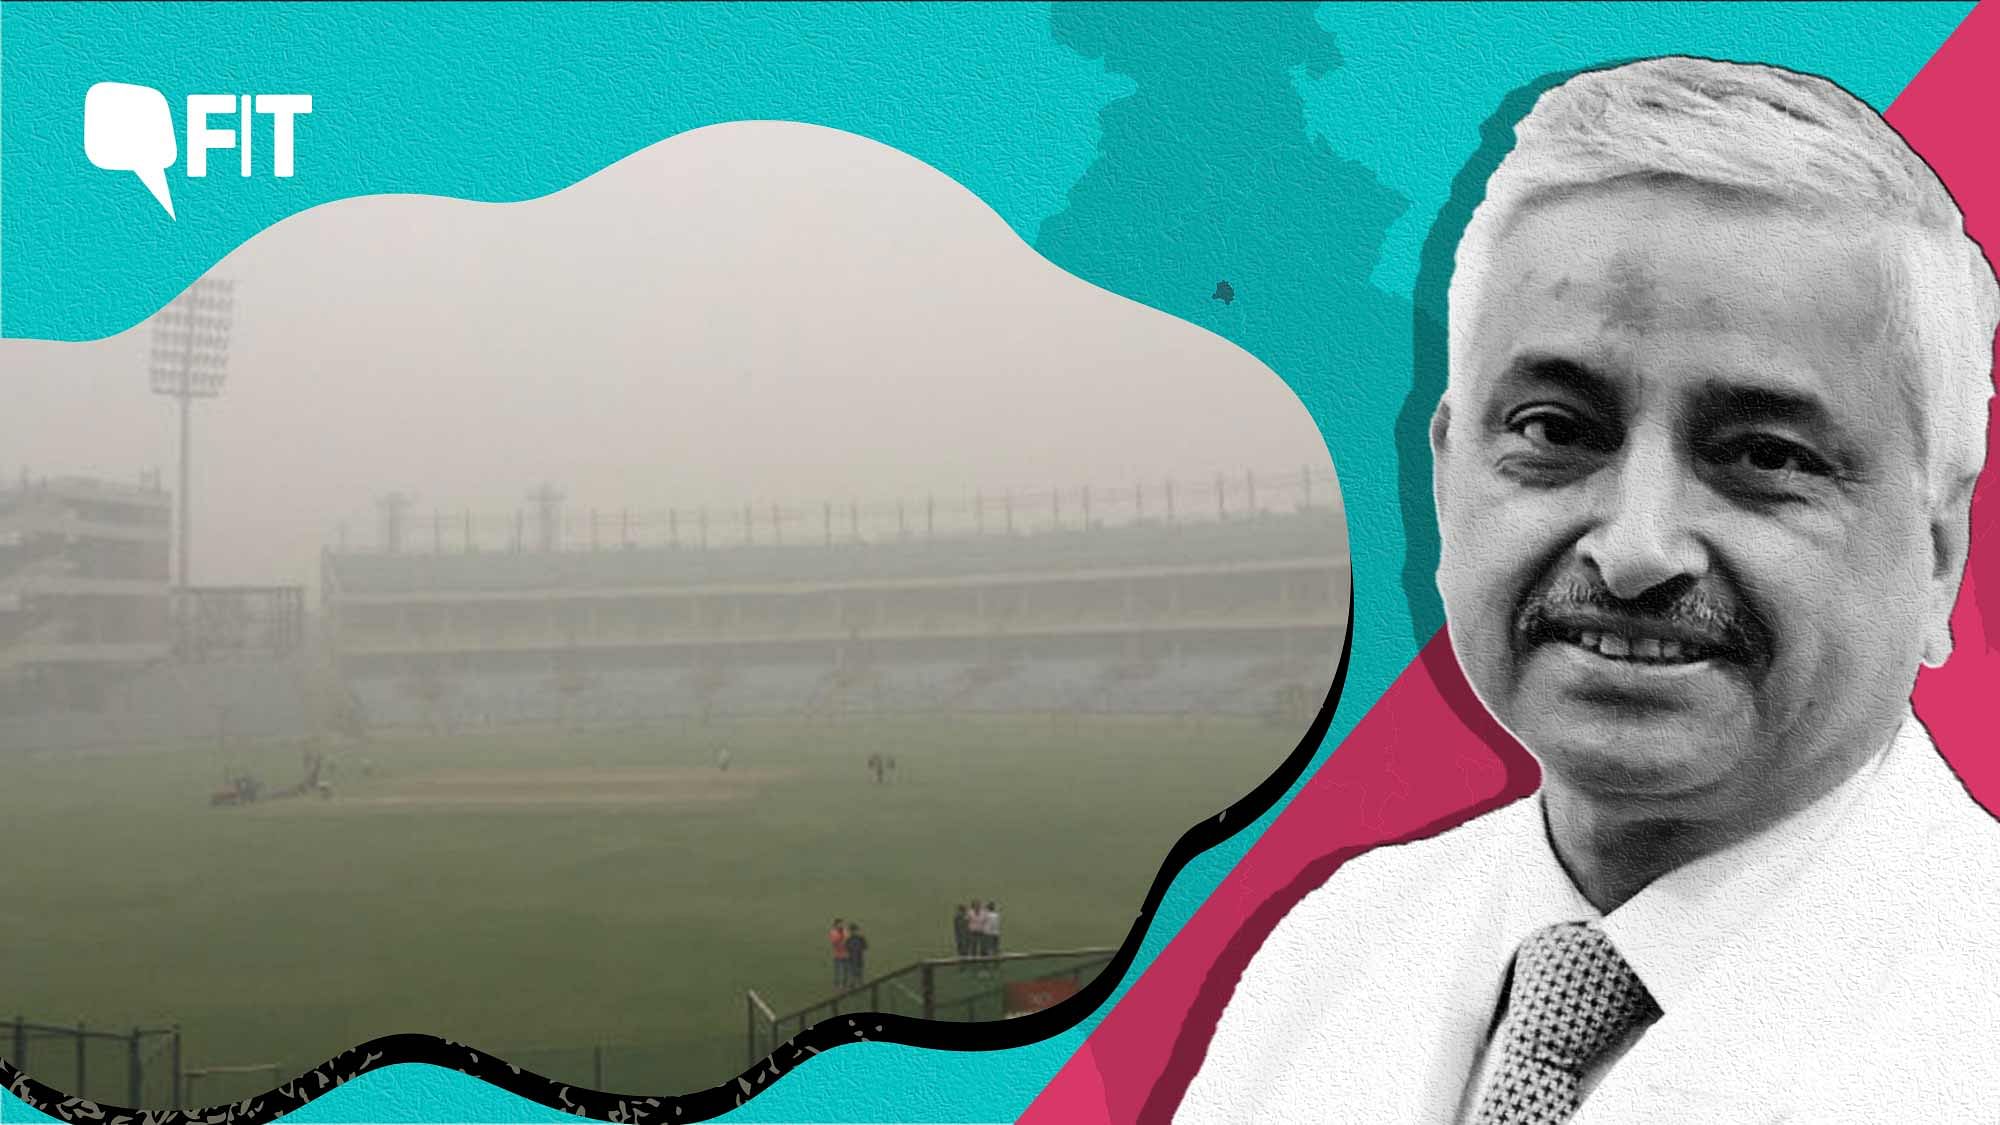 <div class="paragraphs"><p>ICC Cricket World Cup in Delhi Amid Air Pollution: Dr Randeep Guleria.</p></div>